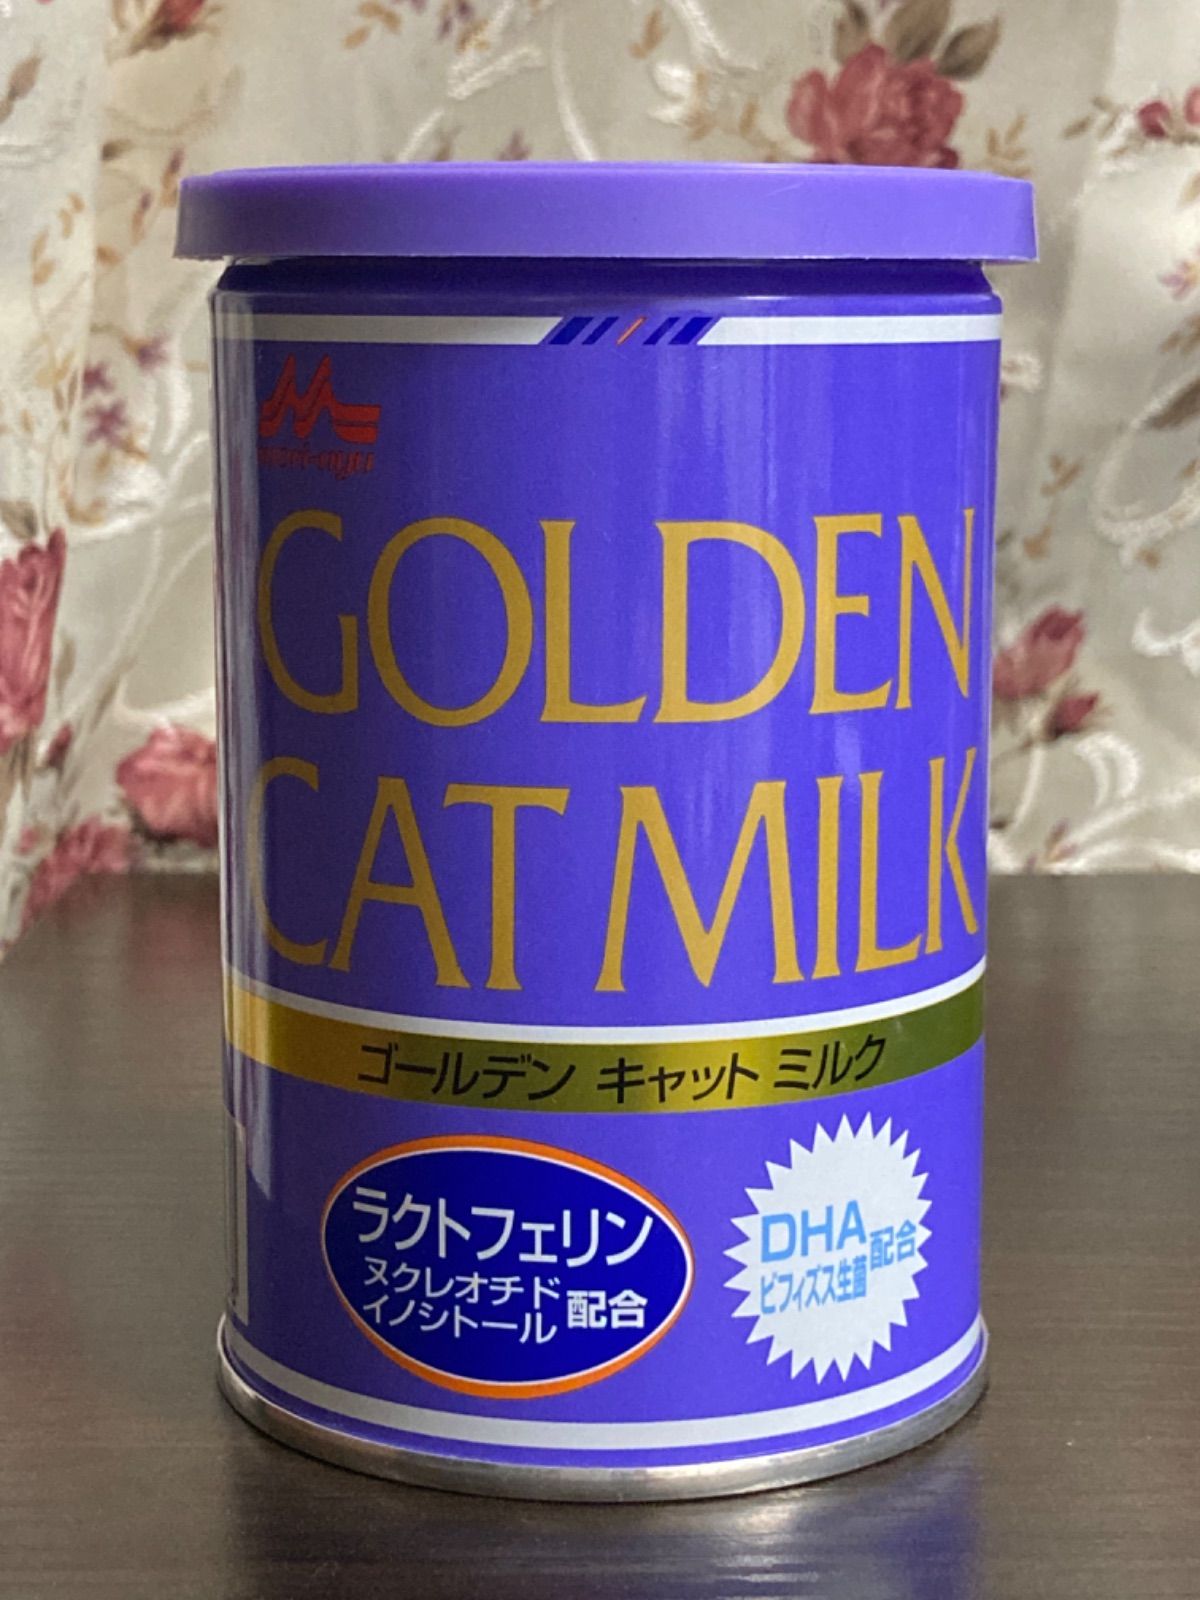 正規認証品!新規格 ワンラック ゴールデンキャットミルク 国産 130g 森乳サンワールド キャットフード 猫 おやつ 